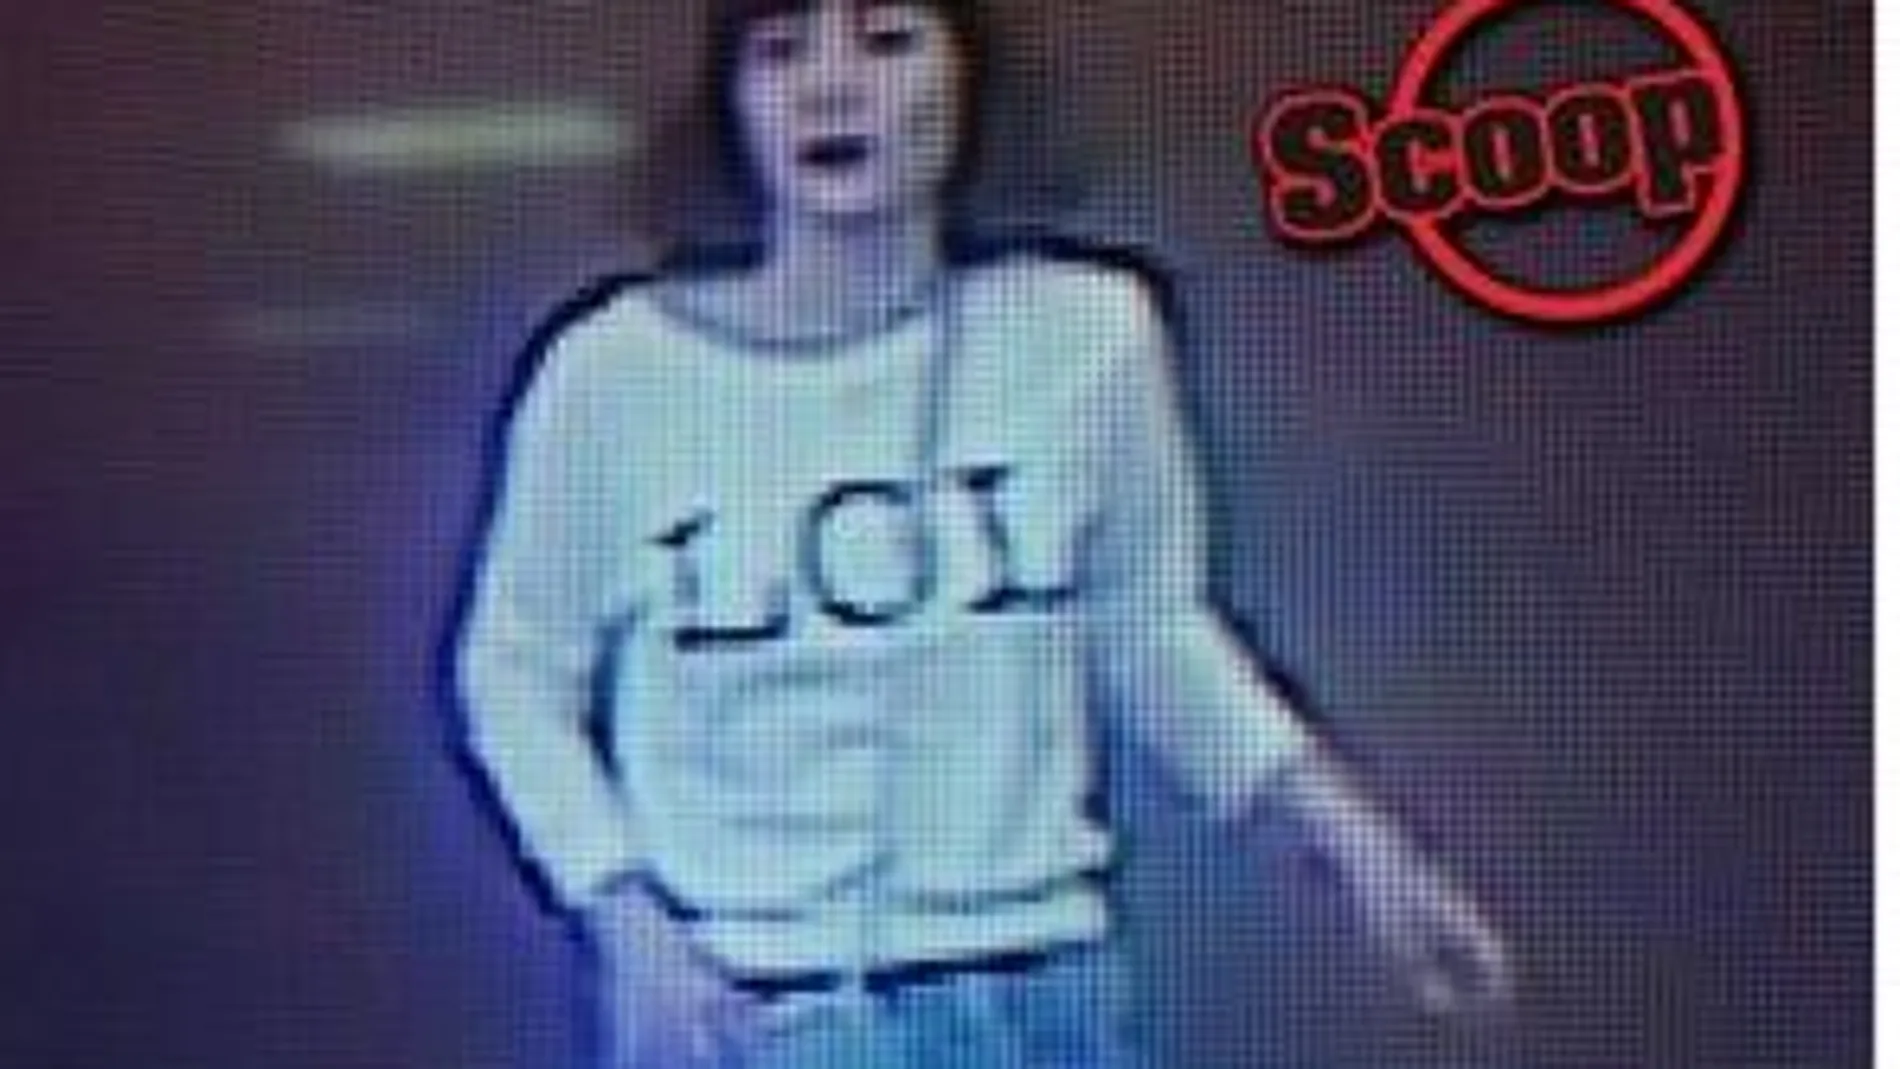 La grabación de las cámaras de seguridad muestra a una mujer con rasgos asiáticos, tez blanca y media melena que viste una camiseta de color blanco y una falda azul.